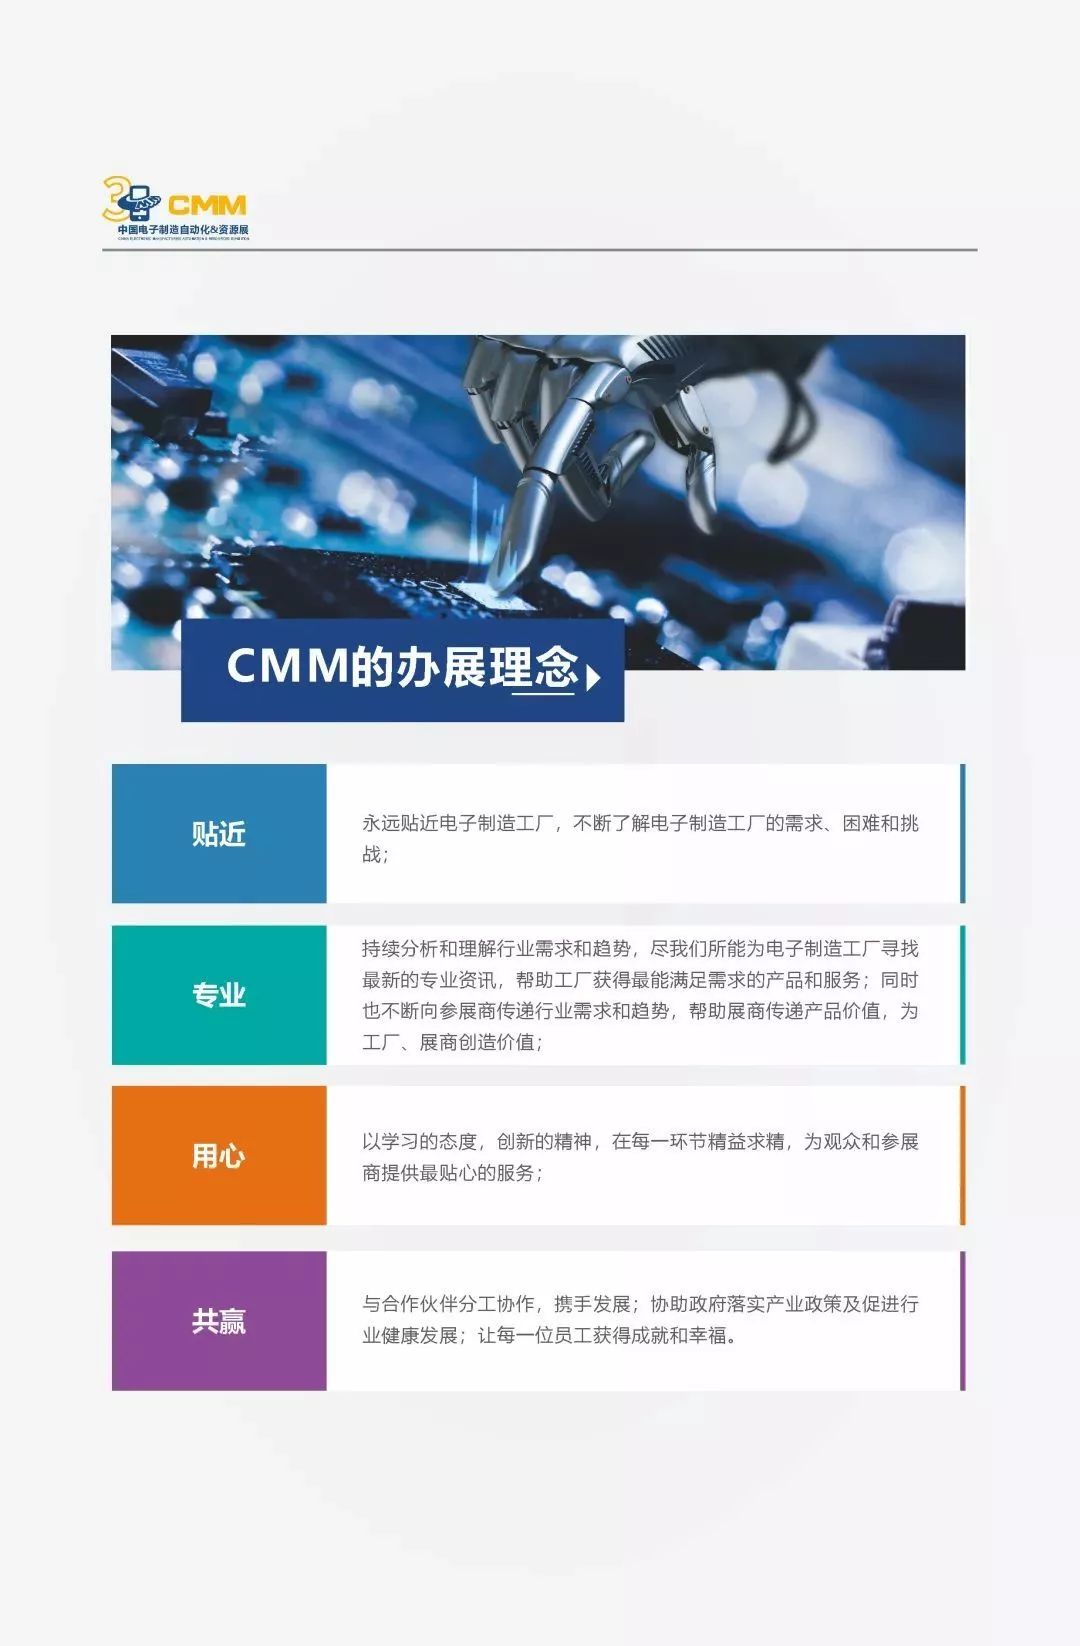 贸易战当前，制造型企业何去何从？CMM助力中国电子制造迎接挑战